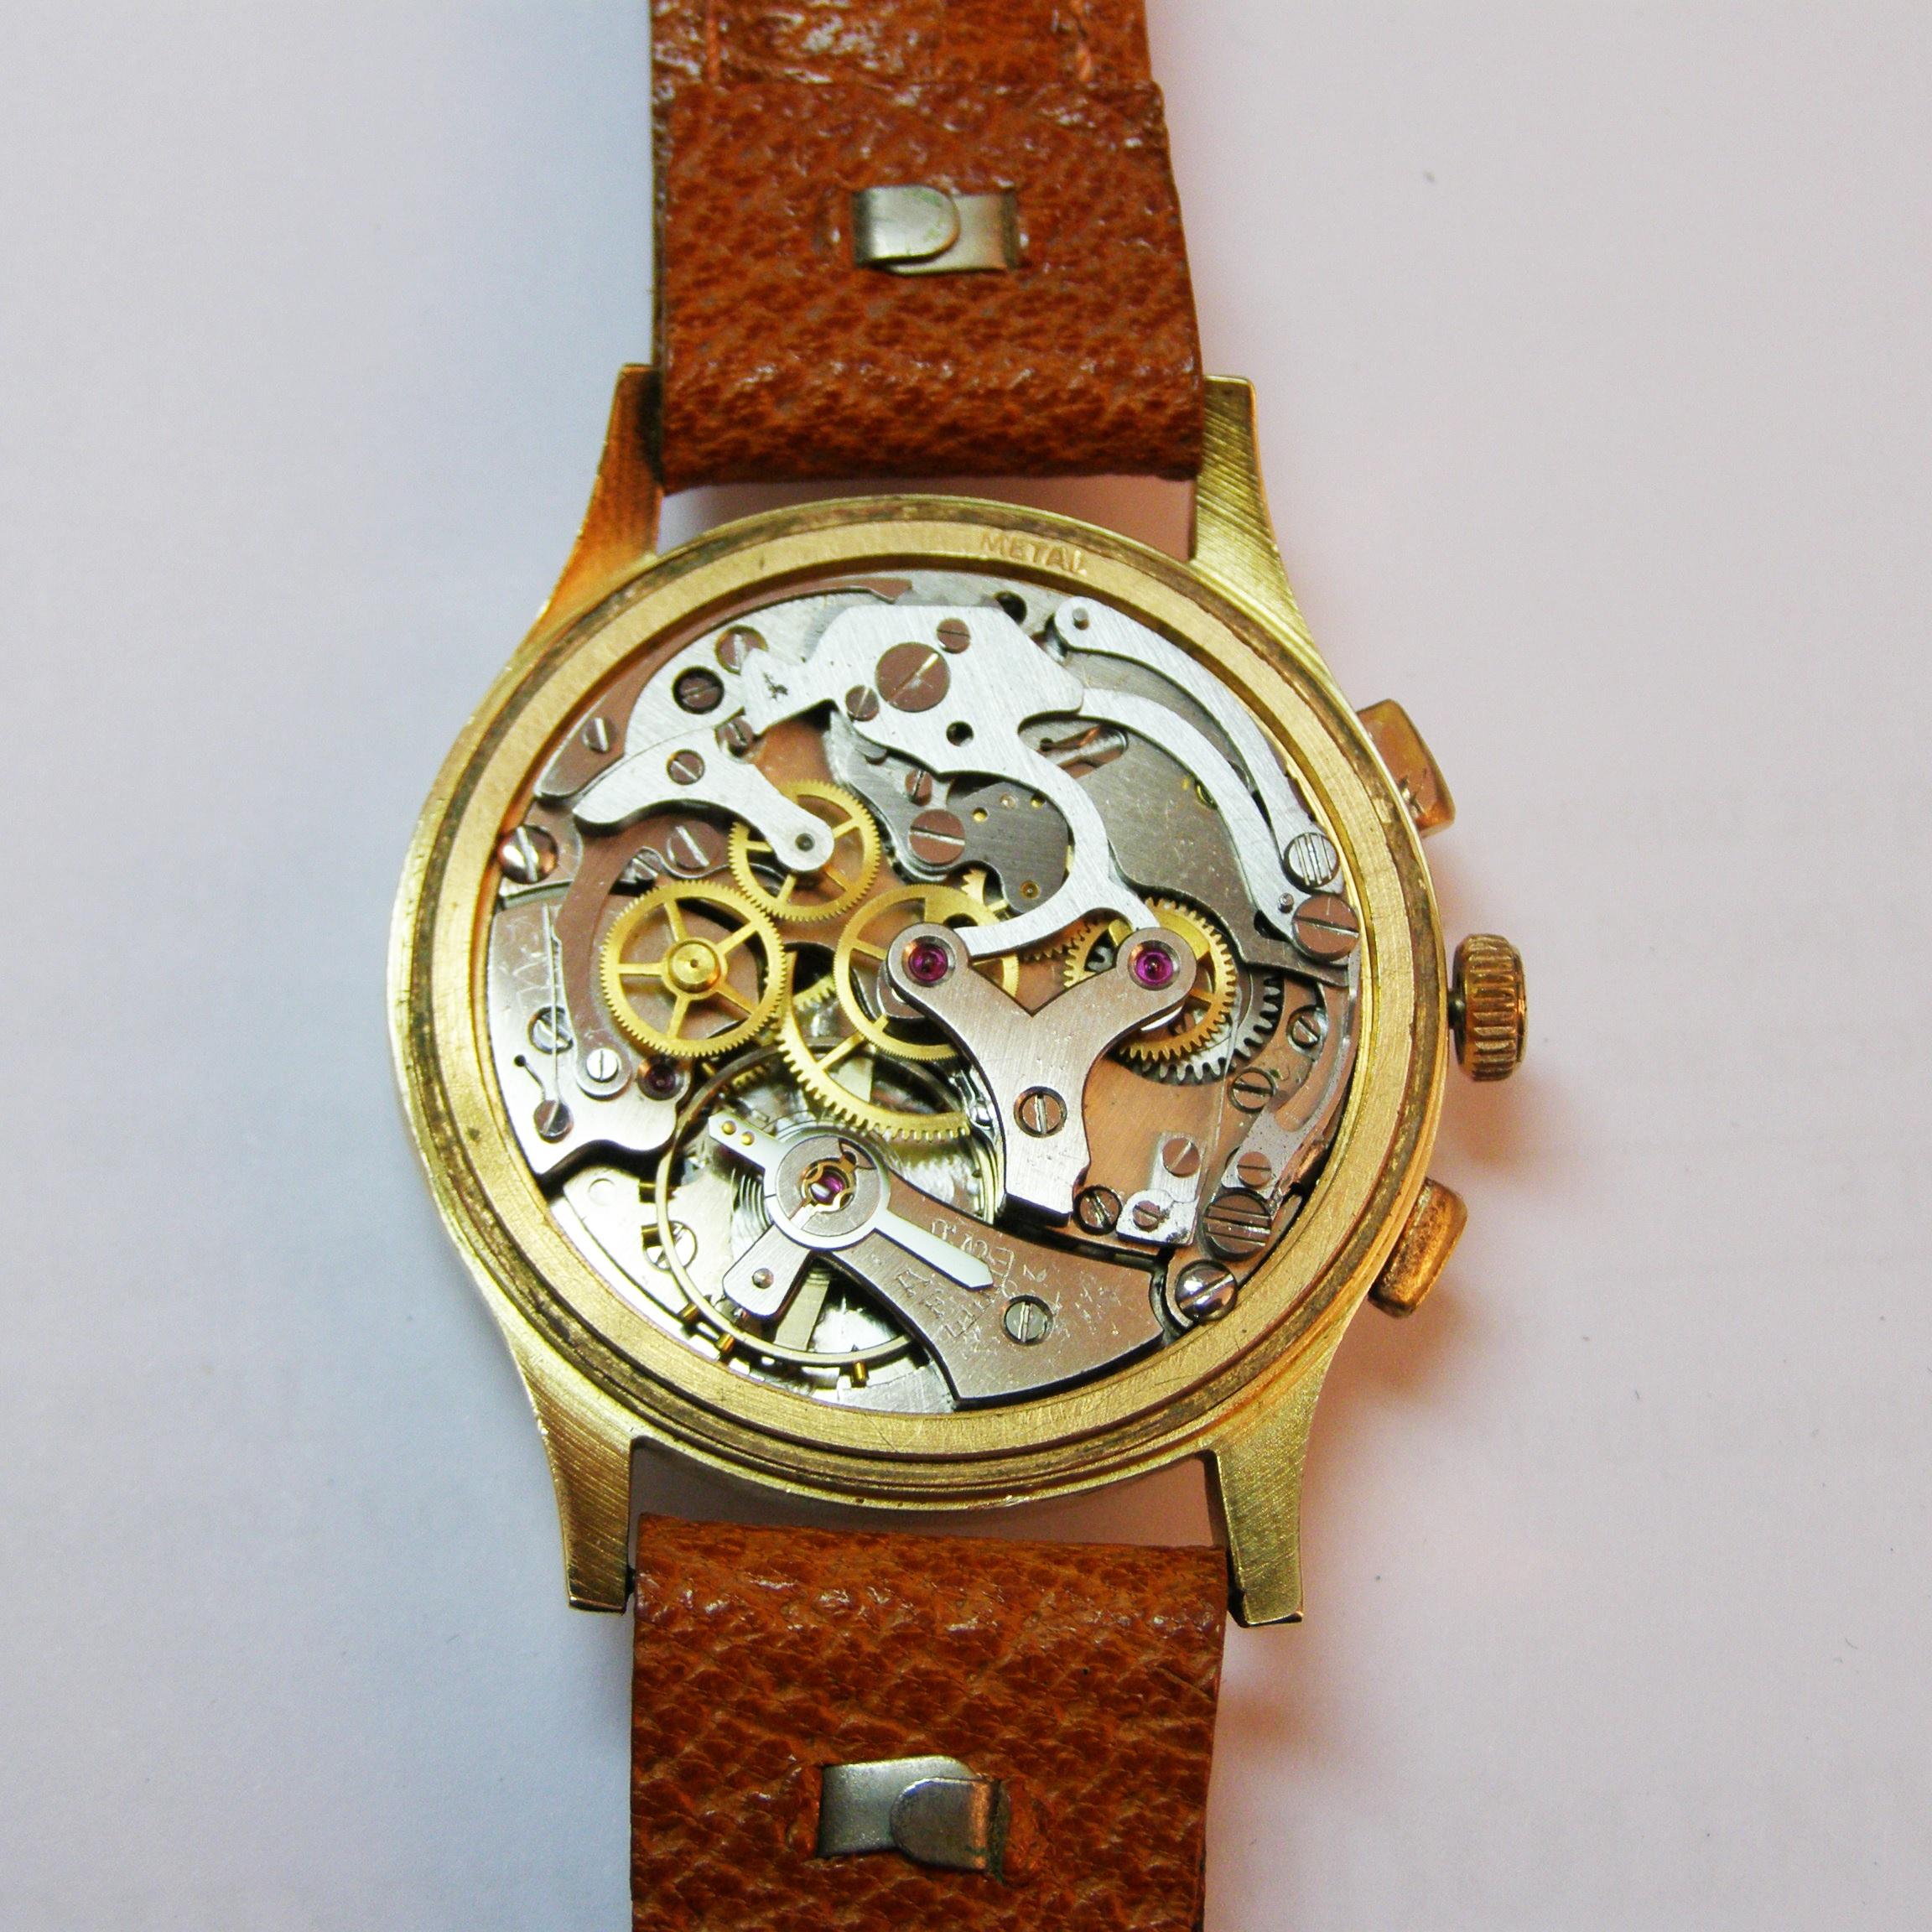 L.A. Leuba Montre chronographe vintage à remontage manuel en or jaune et rose 2